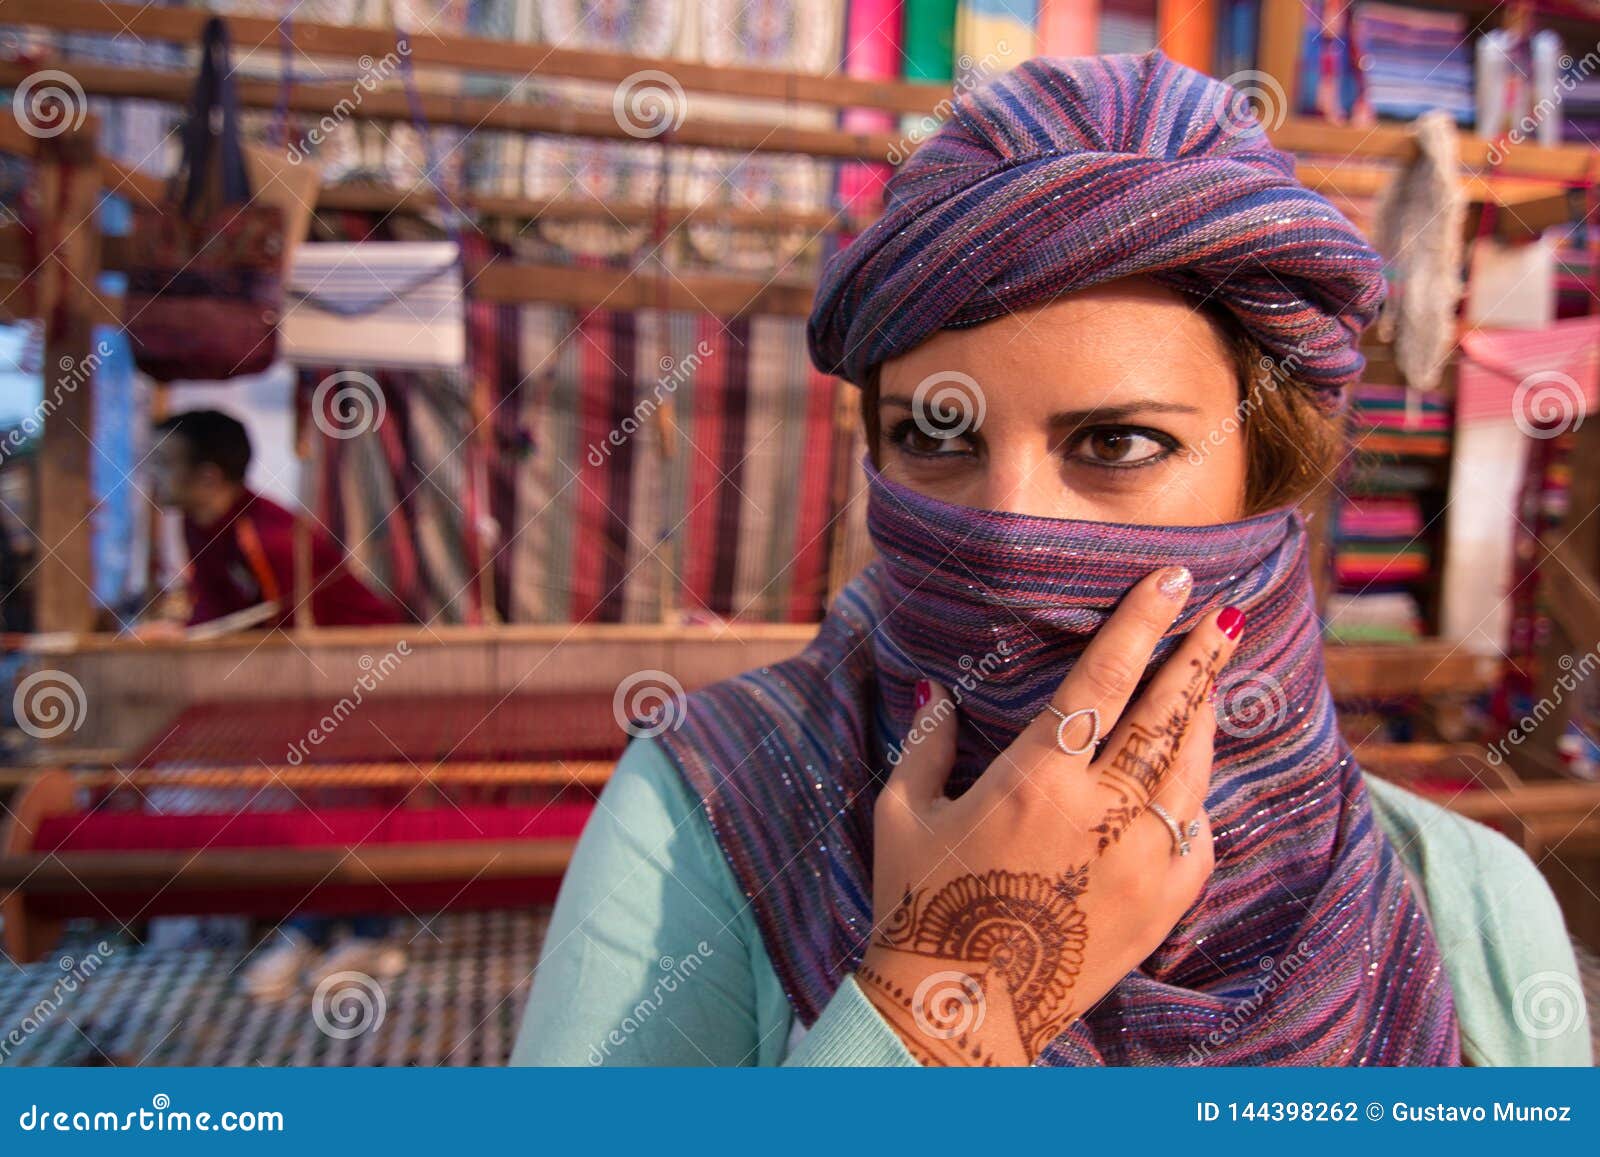 Detenerse Delgado Servicio Mujer Marroquí Con La Bufanda De Seda Que Cubre Su Cara En Marruecos Con  Los Telares En El Fondo Foto de archivo - Imagen de tela, africano:  144398262